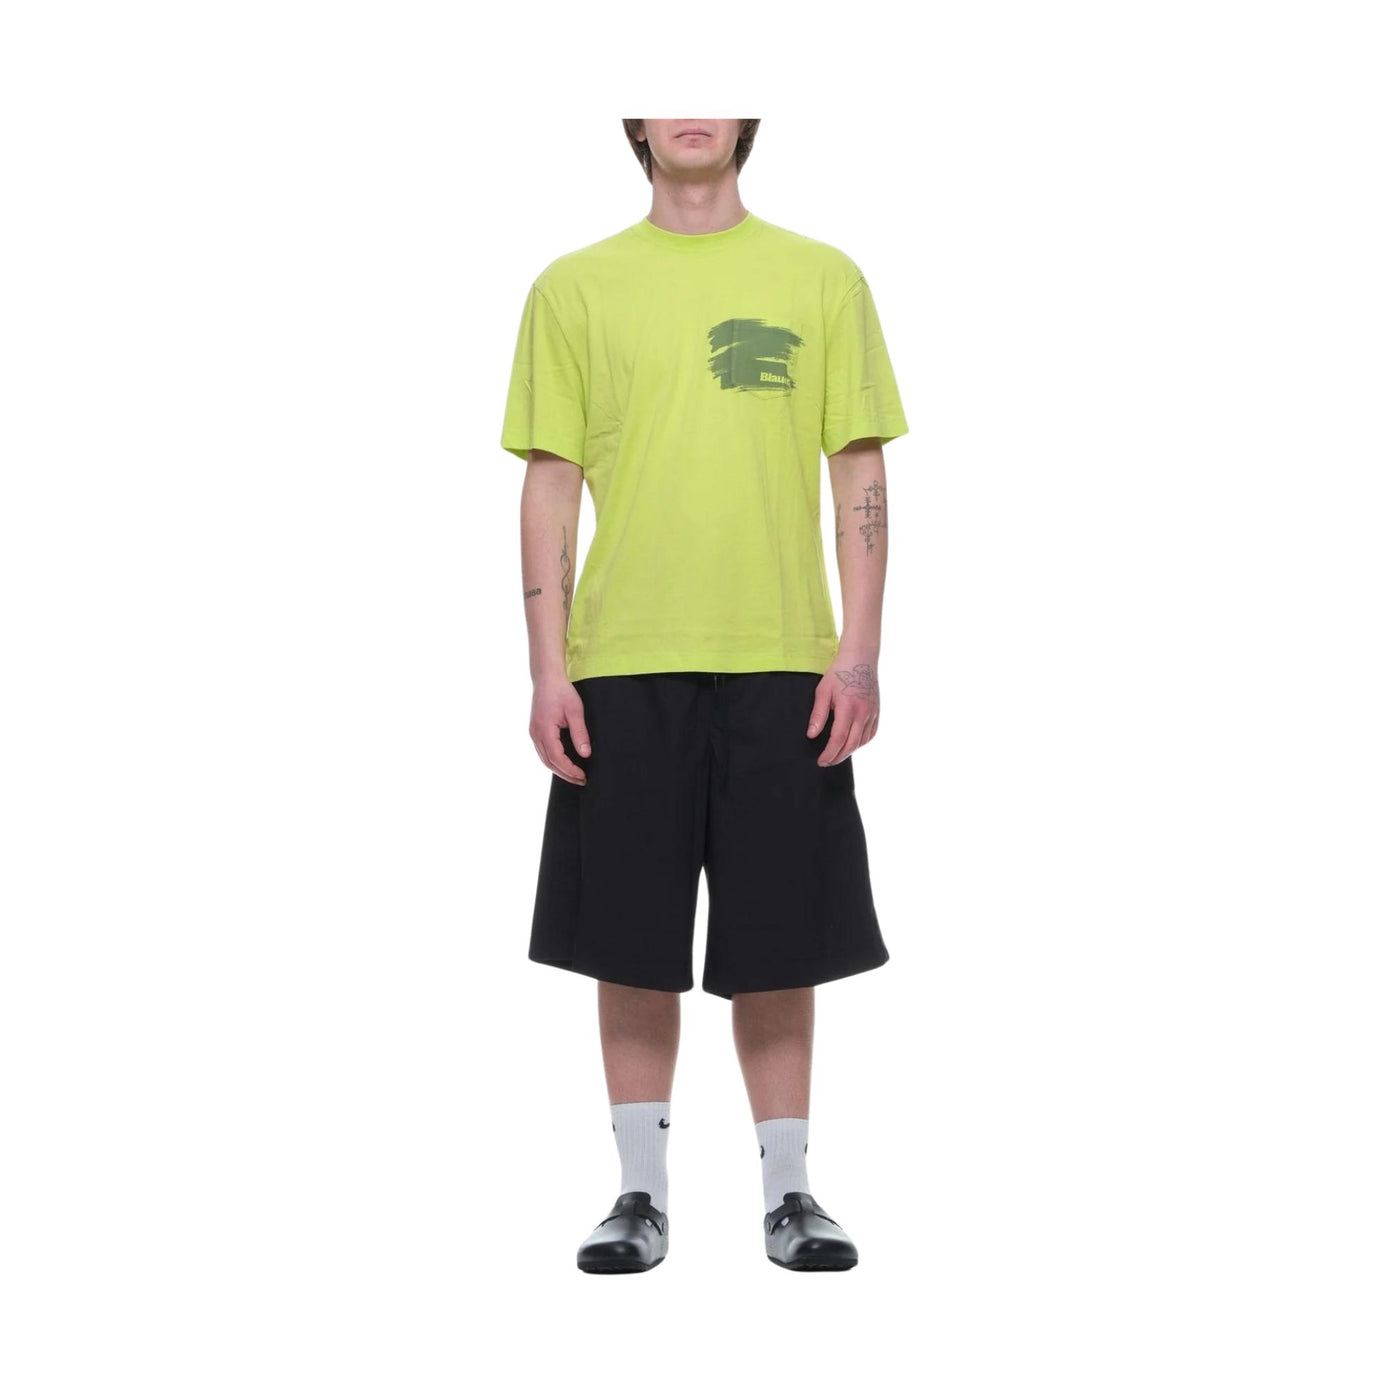 T-shirt Uomo con Tasca sul petto verde fluo frontale